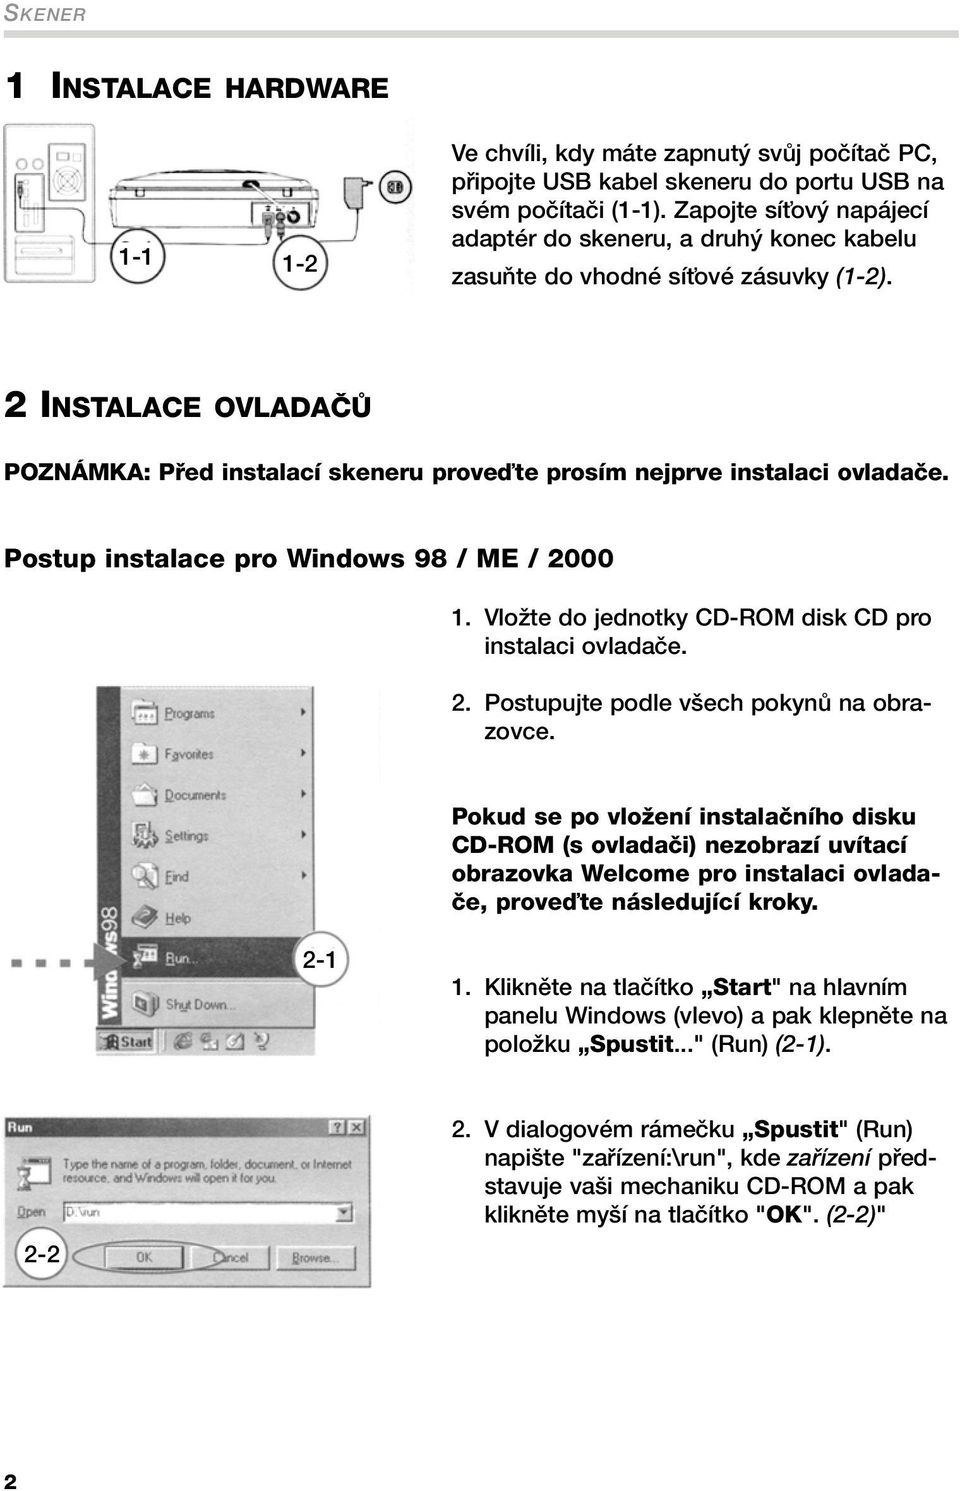 2 INSTALACE OVLADAâÒ POZNÁMKA: Pfied instalací skeneru proveìte prosím nejprve instalaci ovladaãe. Postup instalace pro Windows 98 / ME / 2000 1.